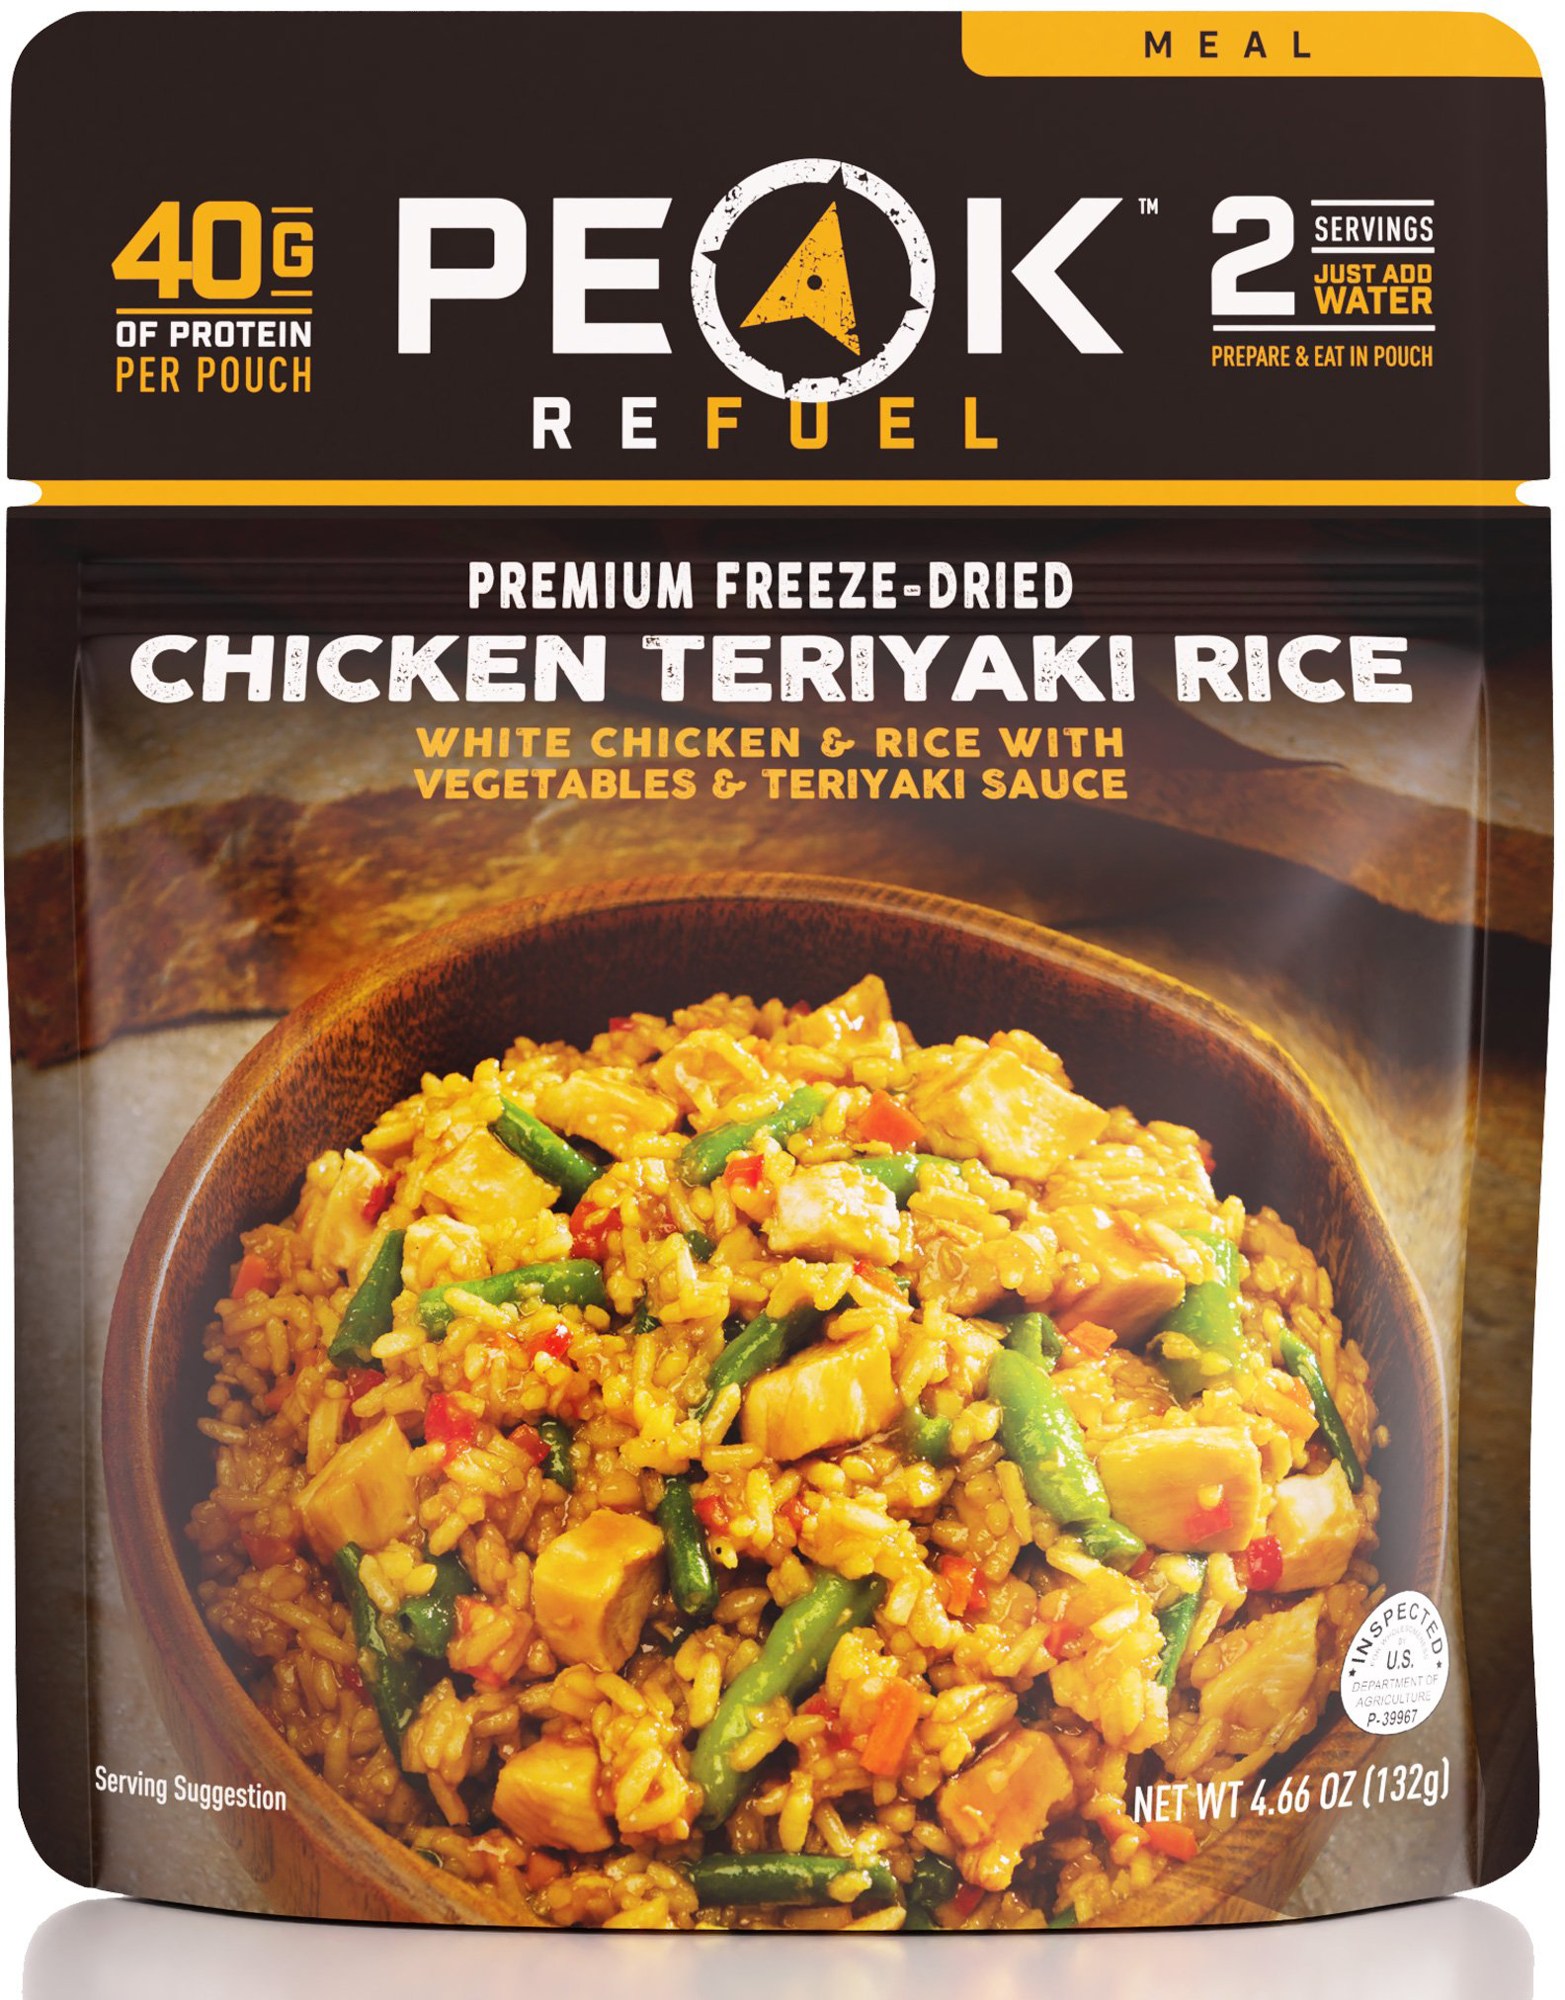 Курица с рисом Терияки – 2 порции PEAK REFUEL вок рисовая лапша с курицей и терияки соусом